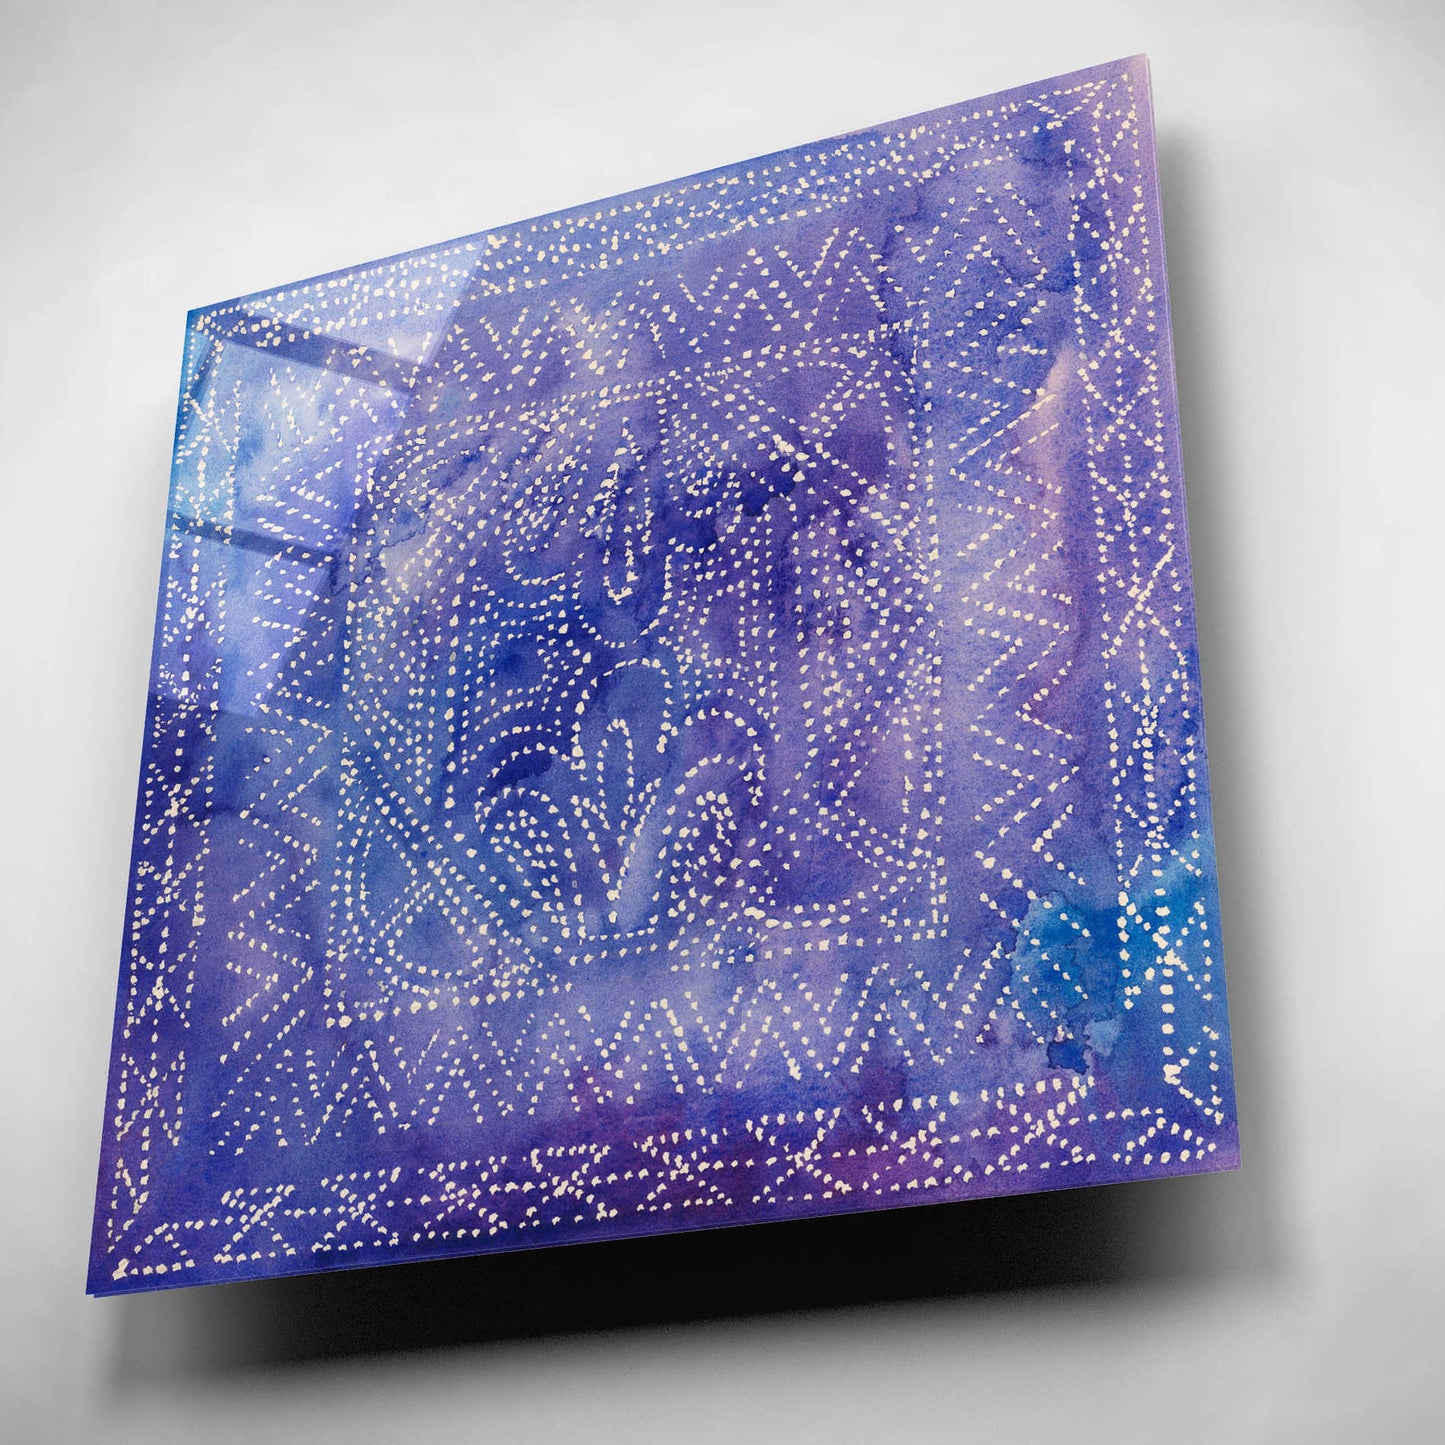 Epic Art 'Batik Nebula II' by Grace Popp, Acrylic Glass Wall Art,12x12